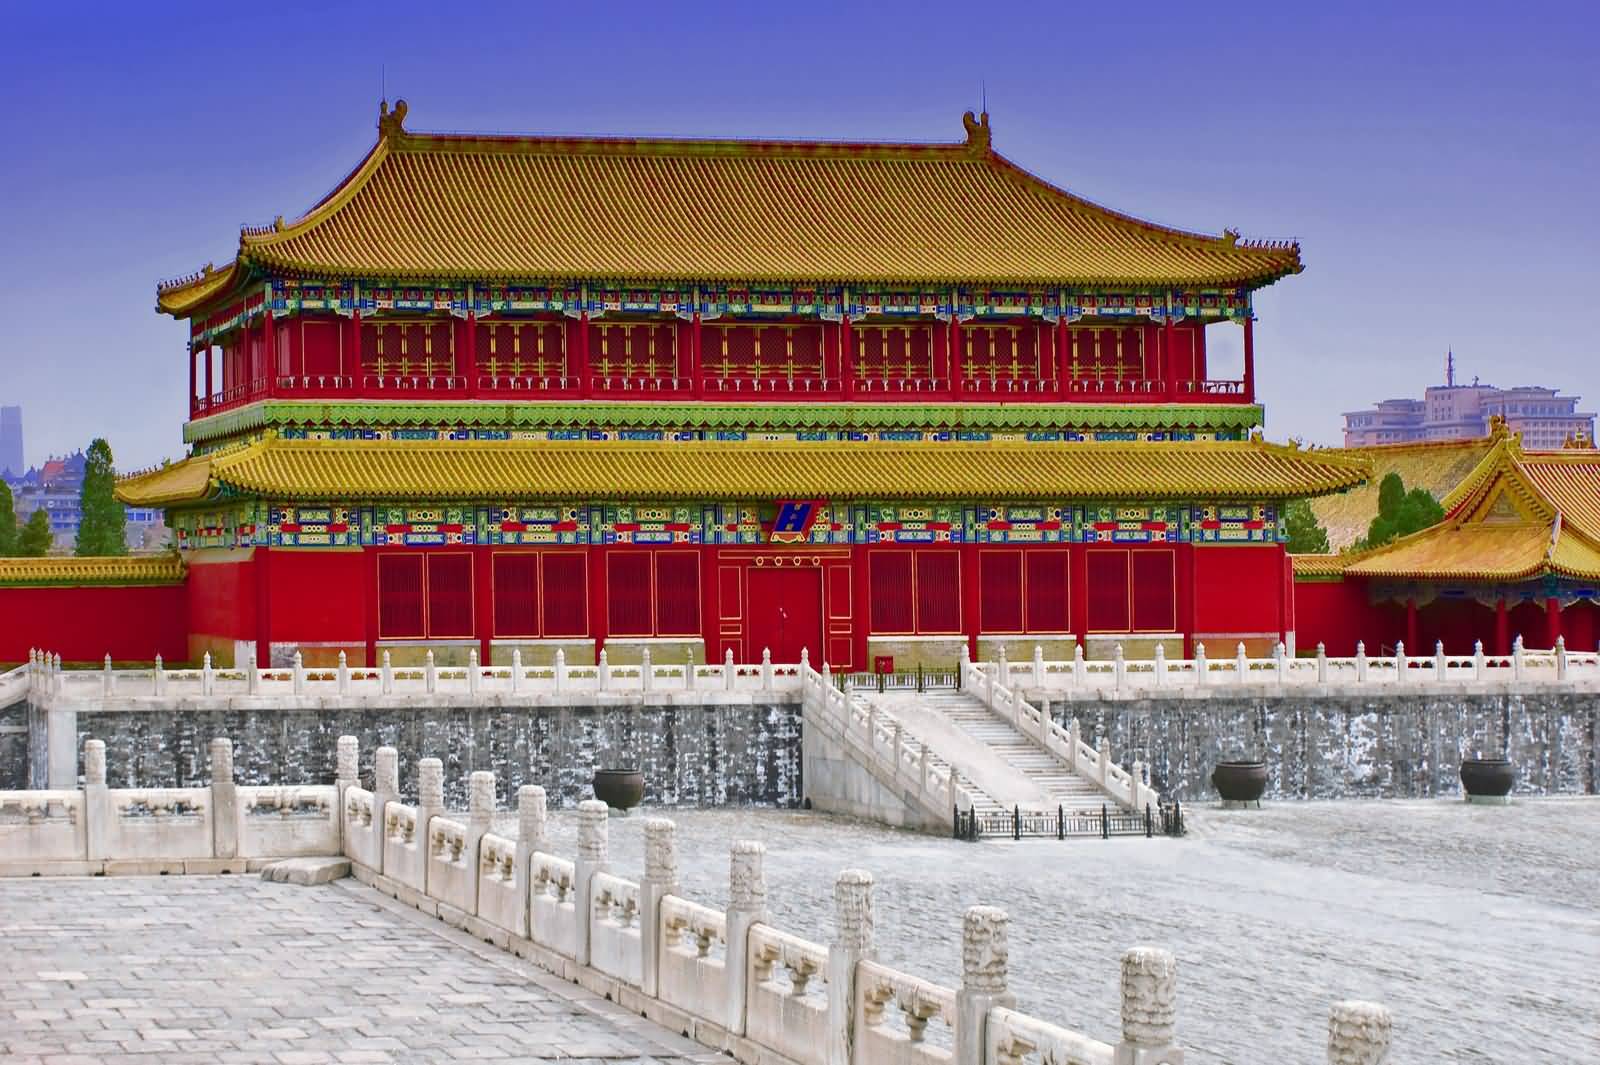 Forbidden City During Winter Season